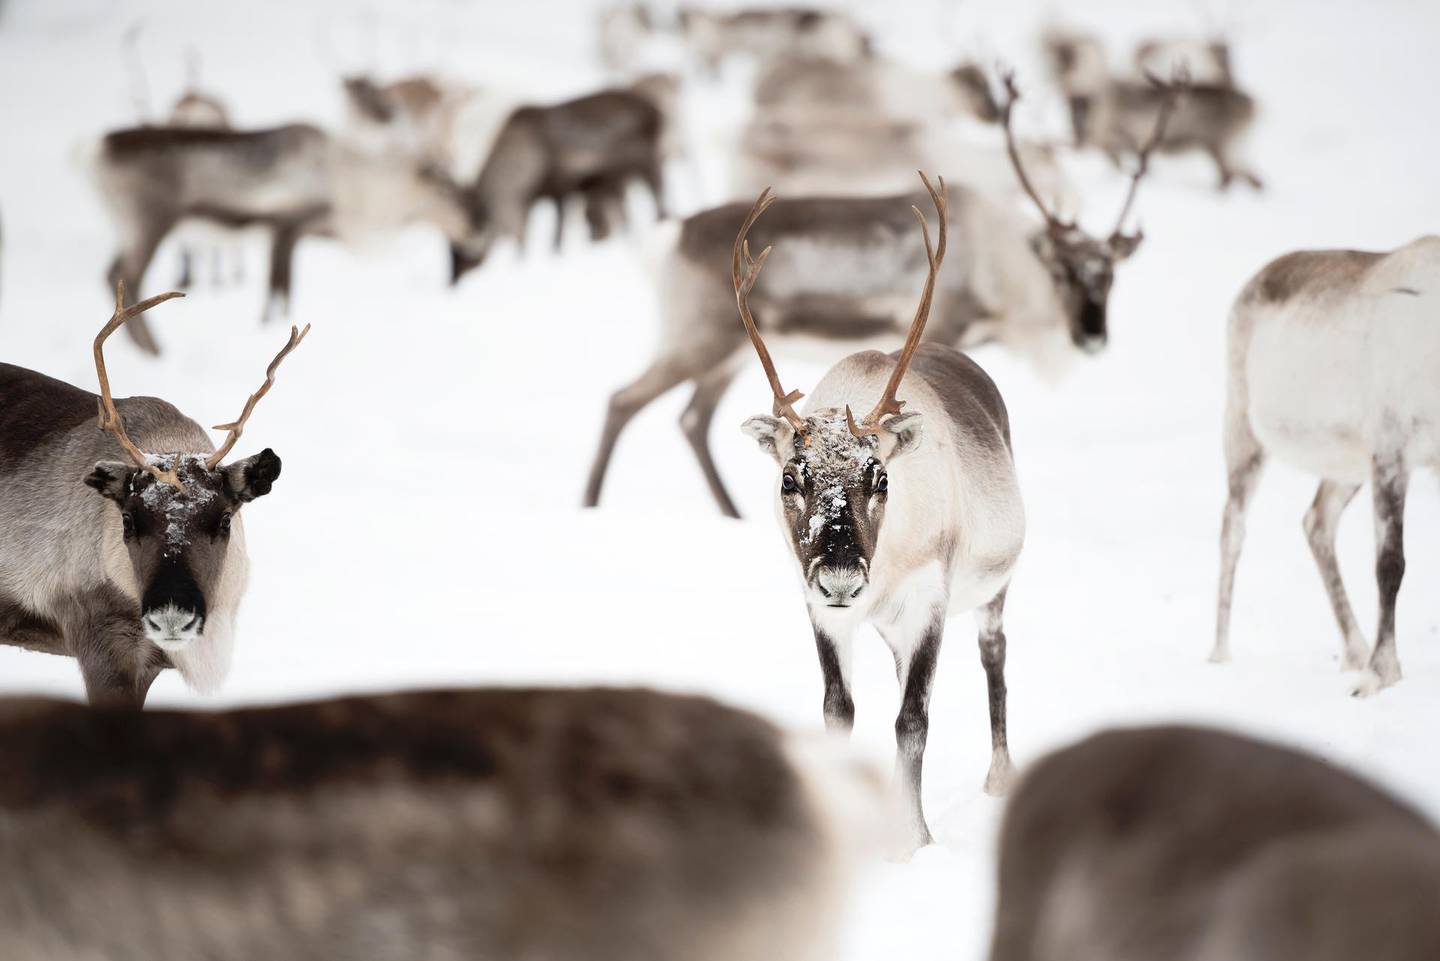 Herd of Reindeer, Inari, Lapland, Finland. Getty Images